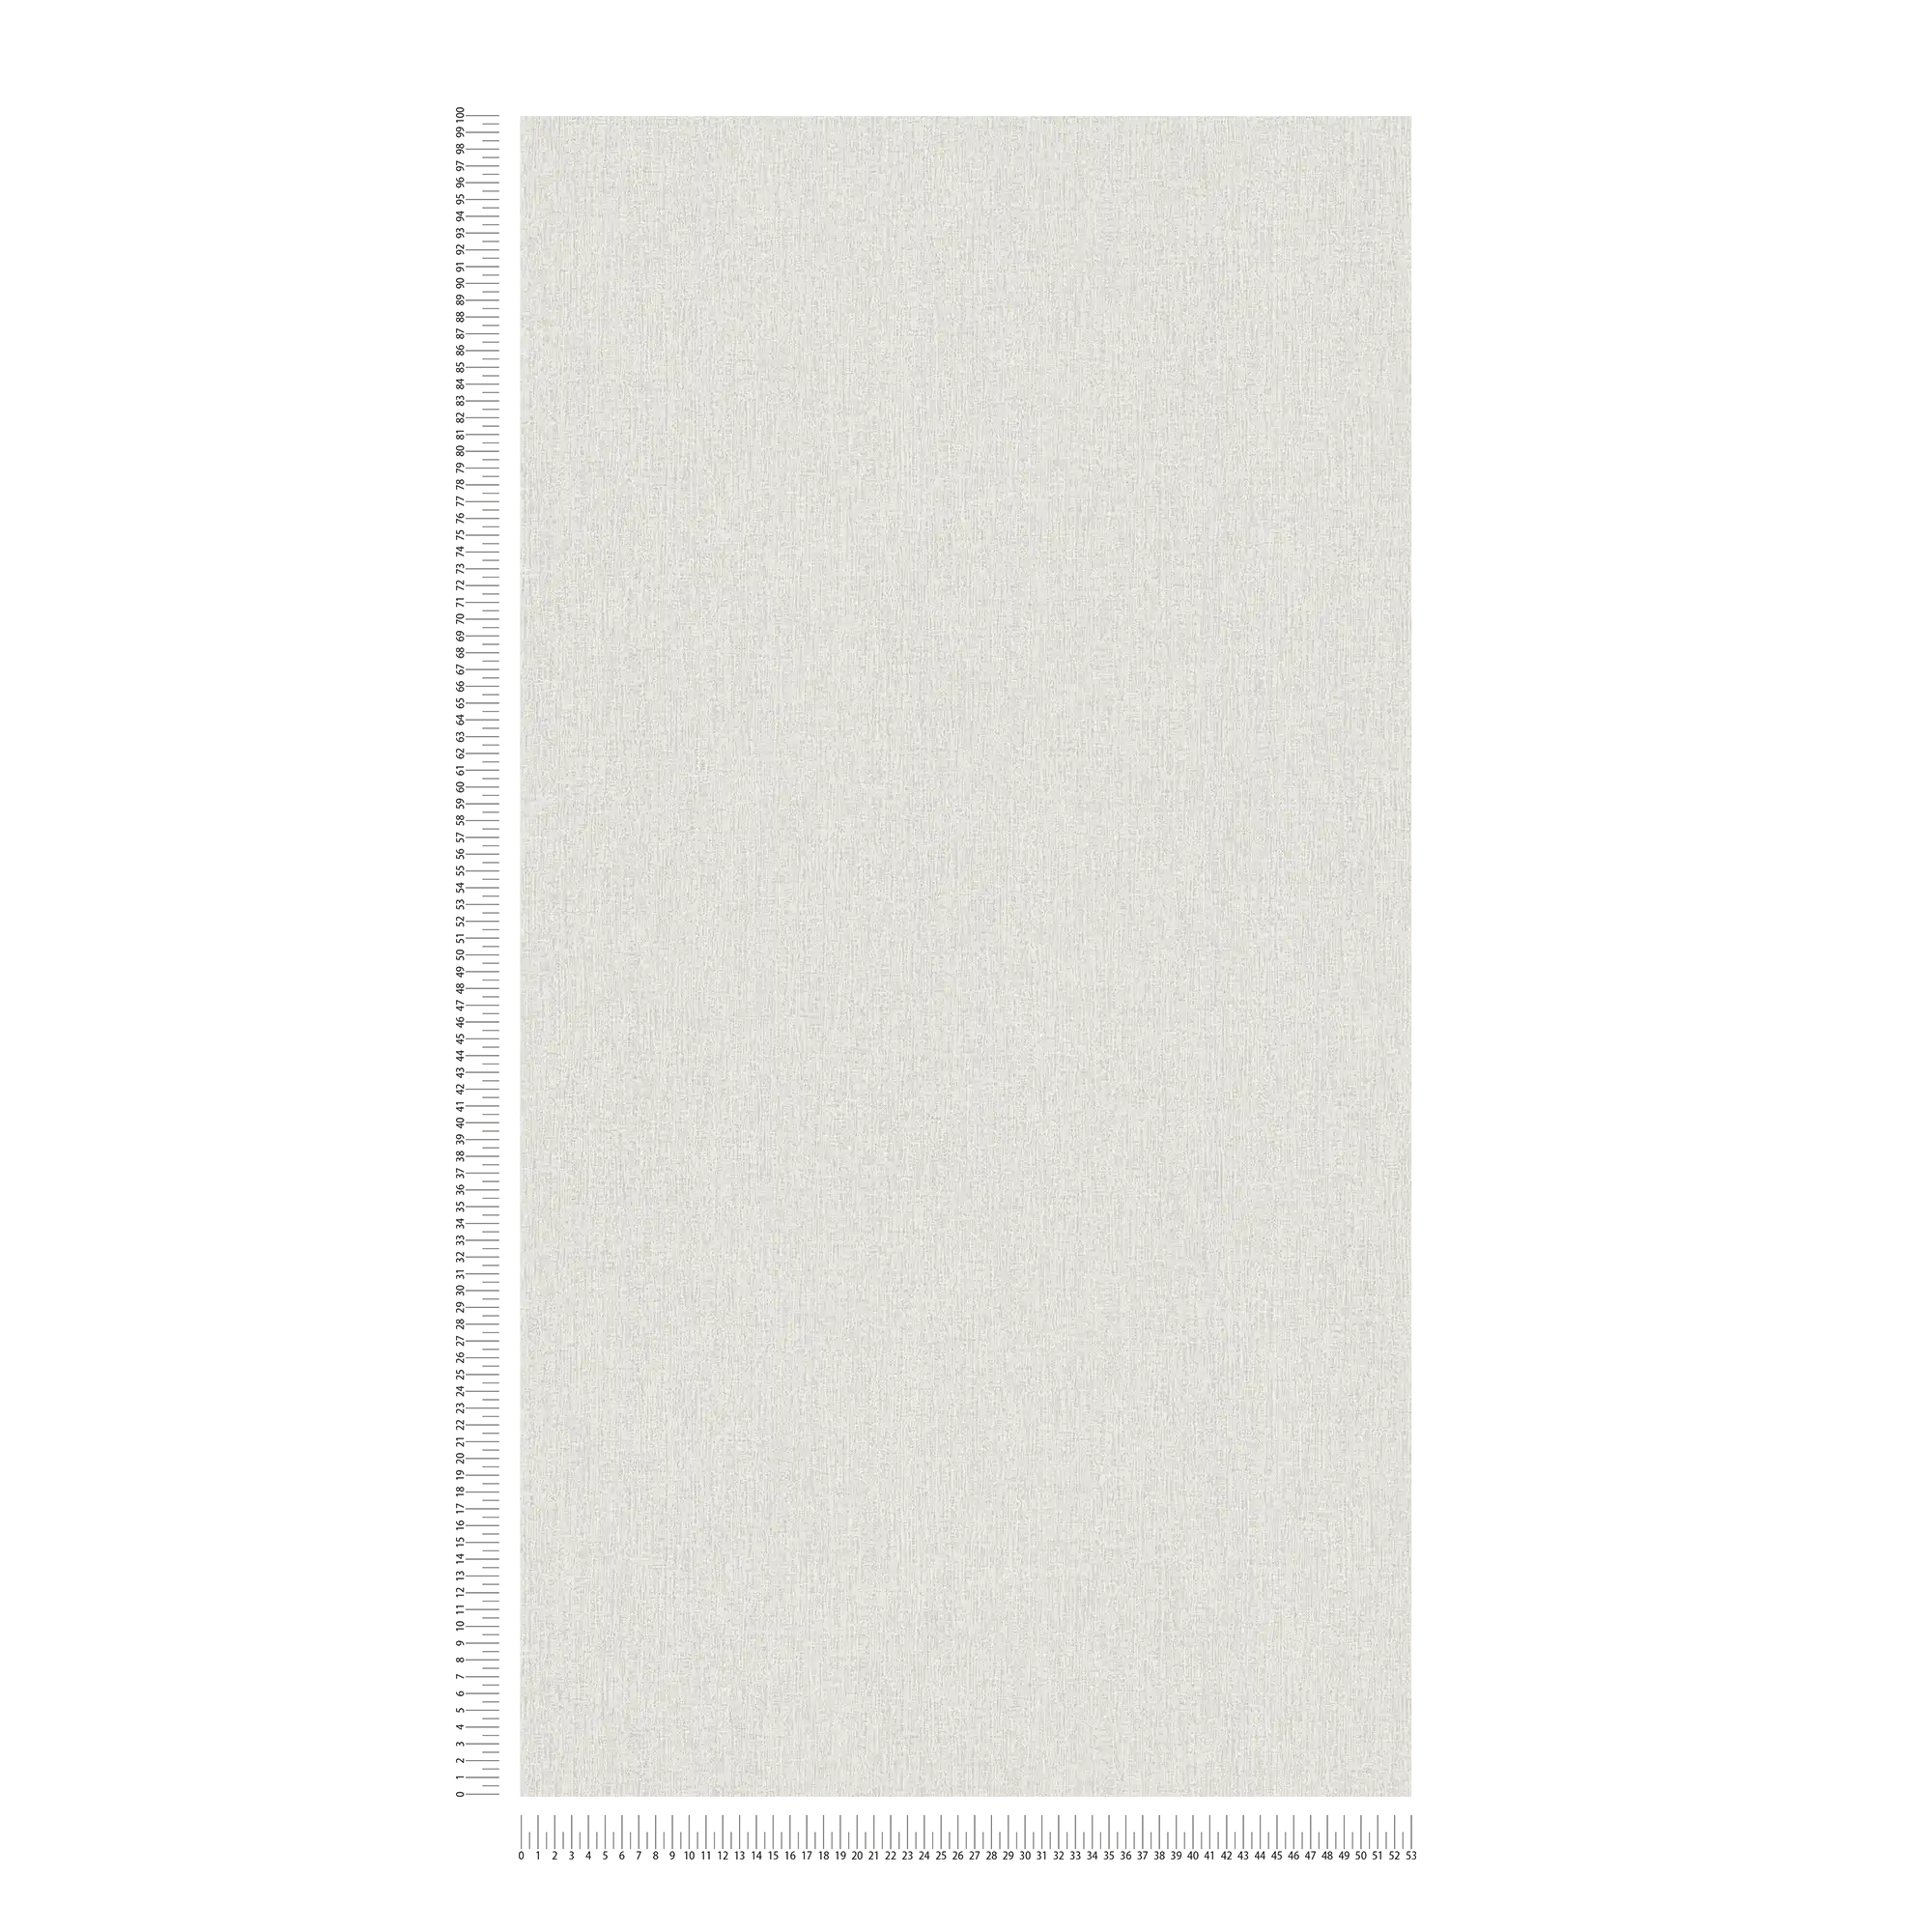             Wallpaper linen look, plain & mottled - white
        